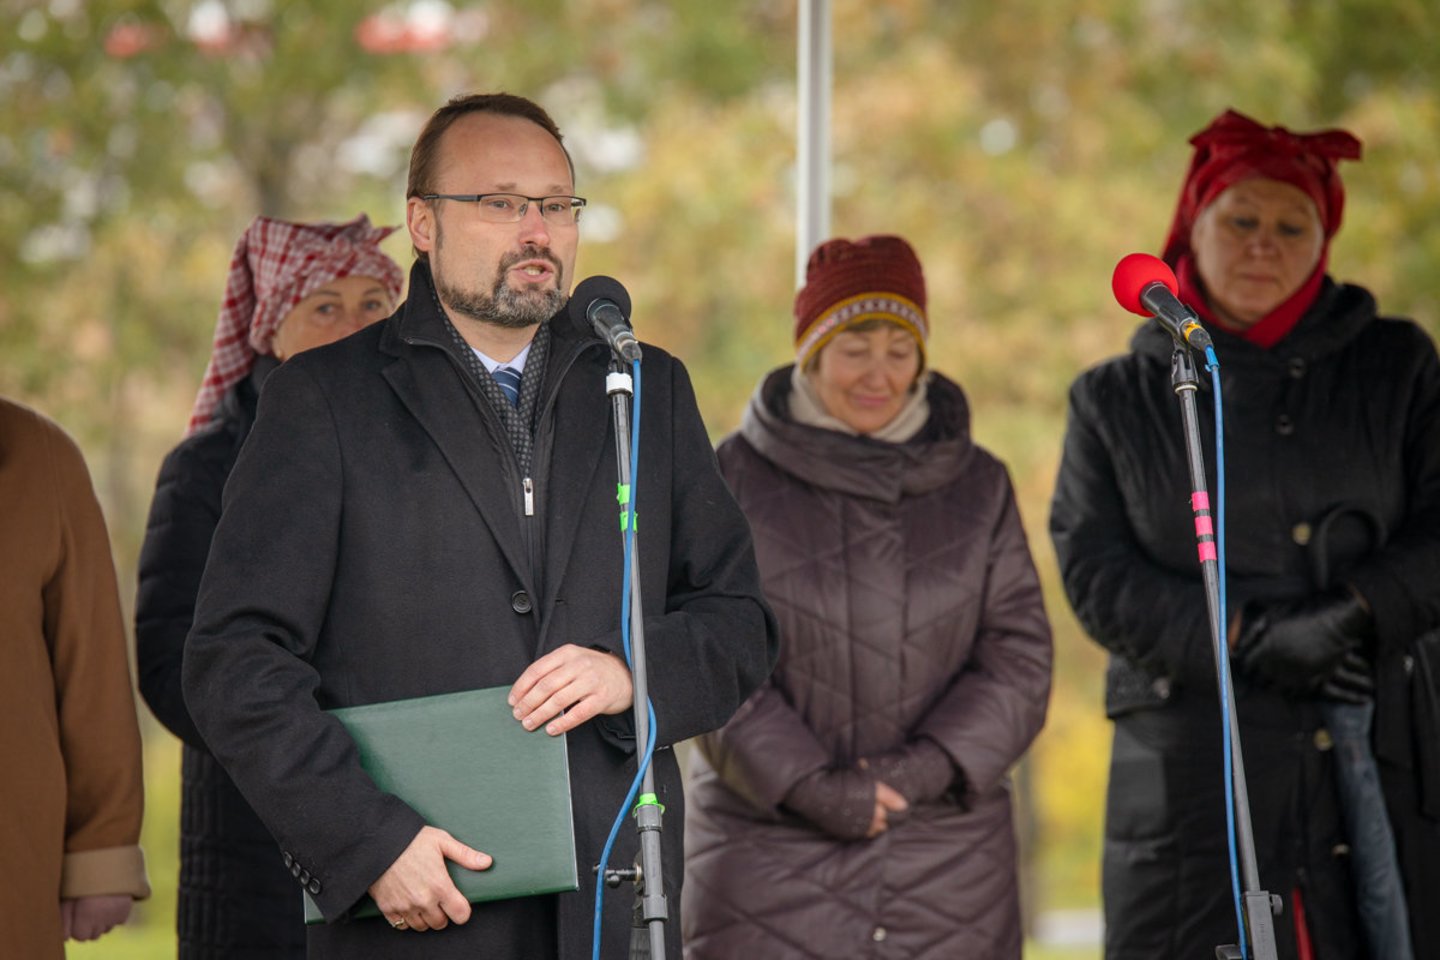  Kryžkalnyje pradėtas statyti memorialas Lietuvos partizanams.<br> LRVK/Darius Janučio nuotr.